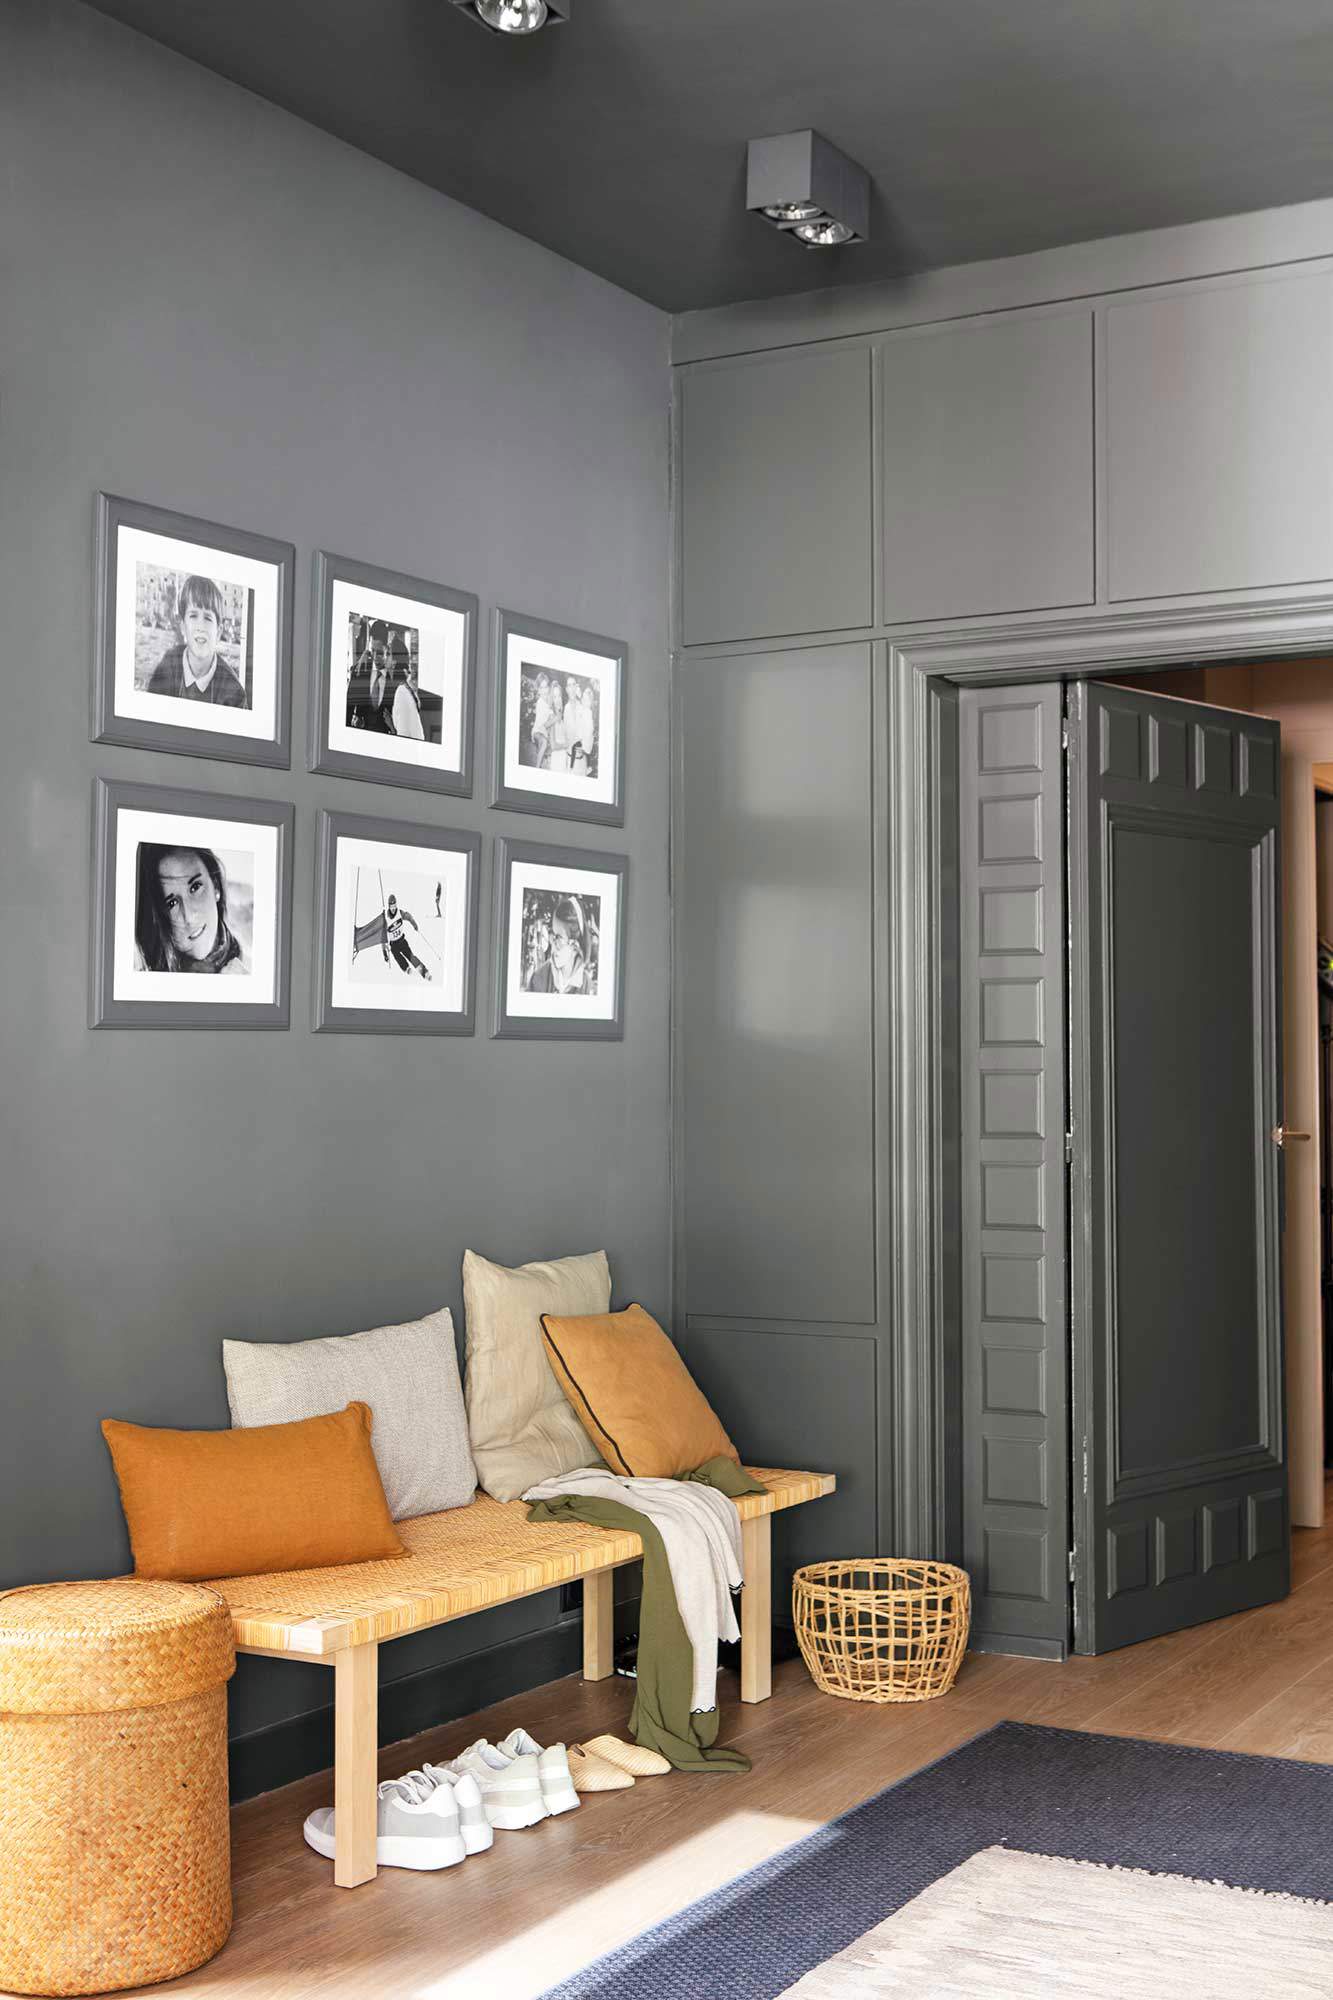 Recibidor con banco y pared decorada con una composición de fotografías en blanco y negro.